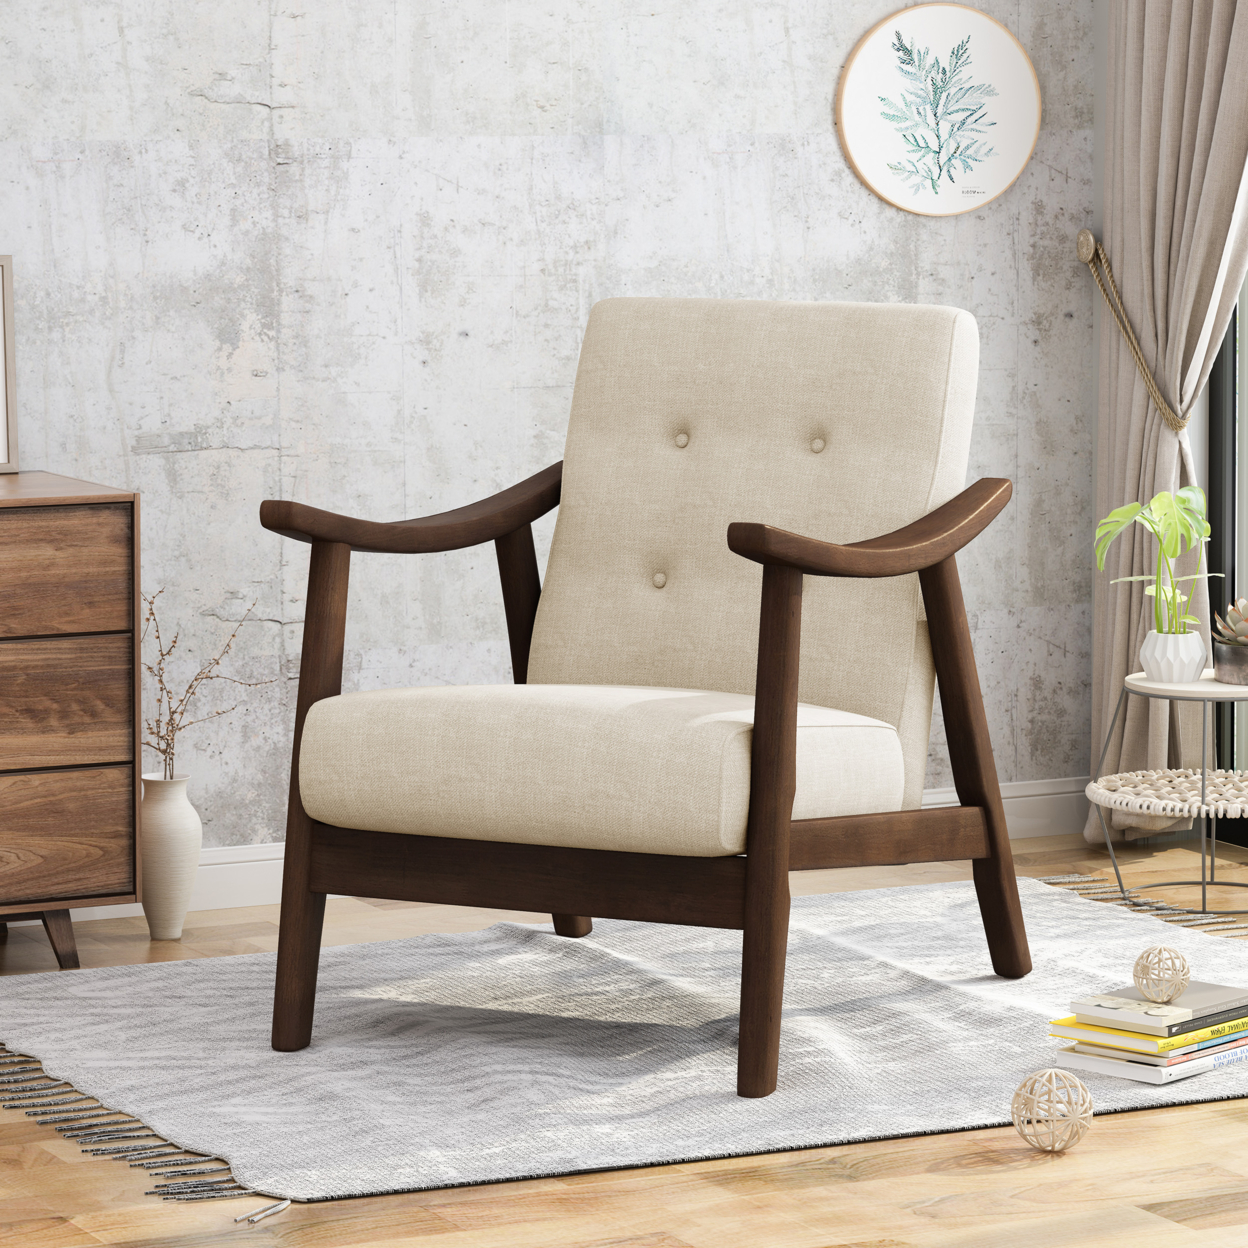 Aurora Mid-Century Modern Accent Chair - Beige + Brown